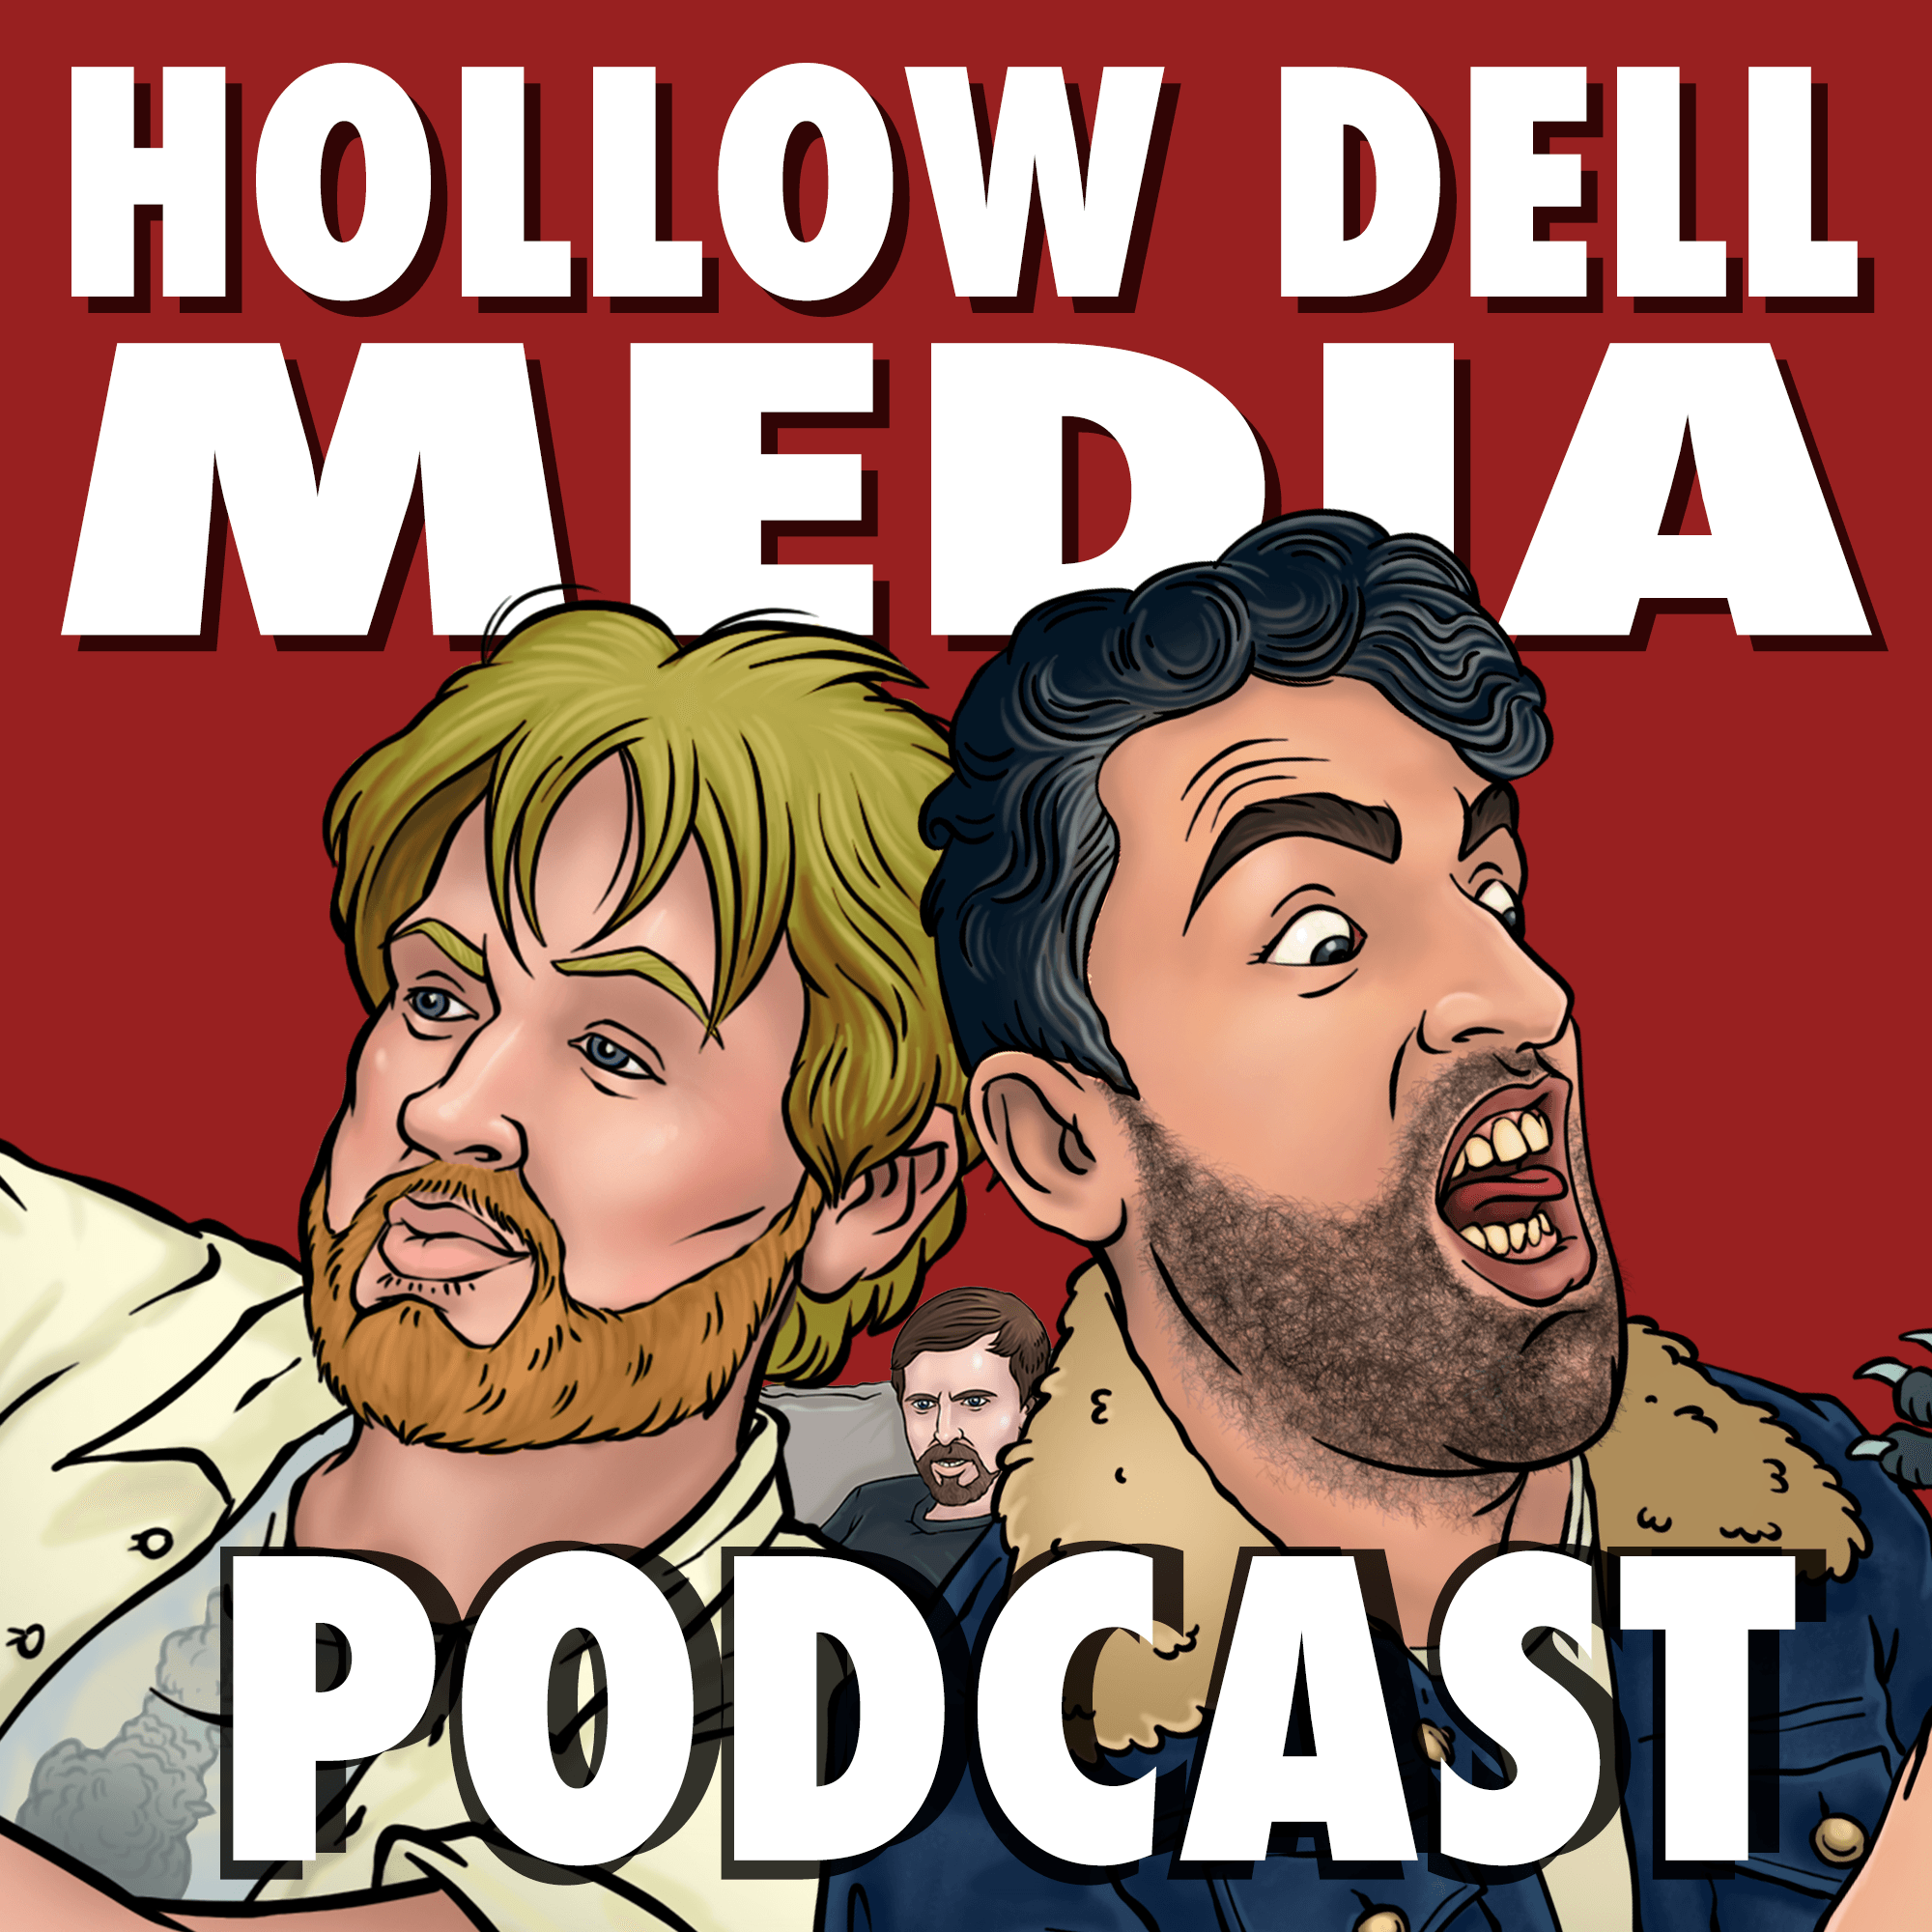 Hollow Dell Media